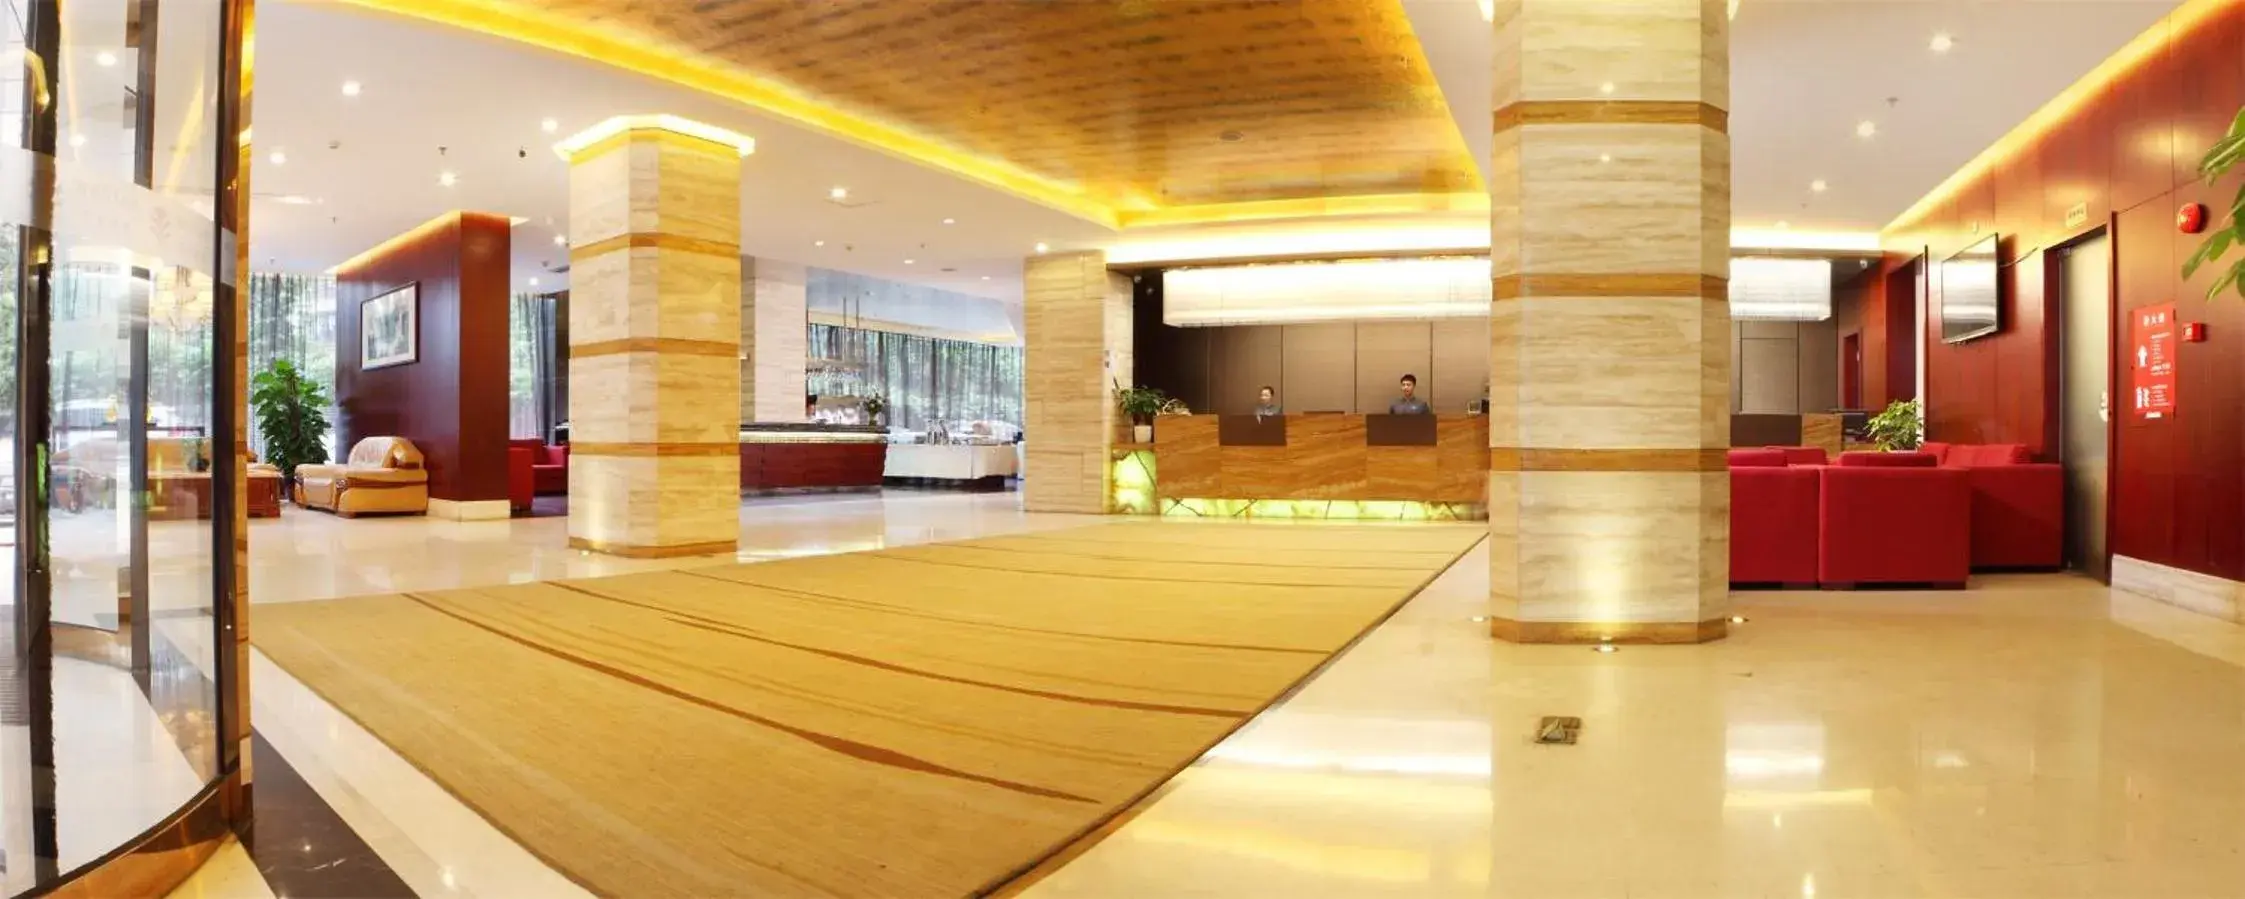 Lobby or reception, Lobby/Reception in Shi Liu Hotel